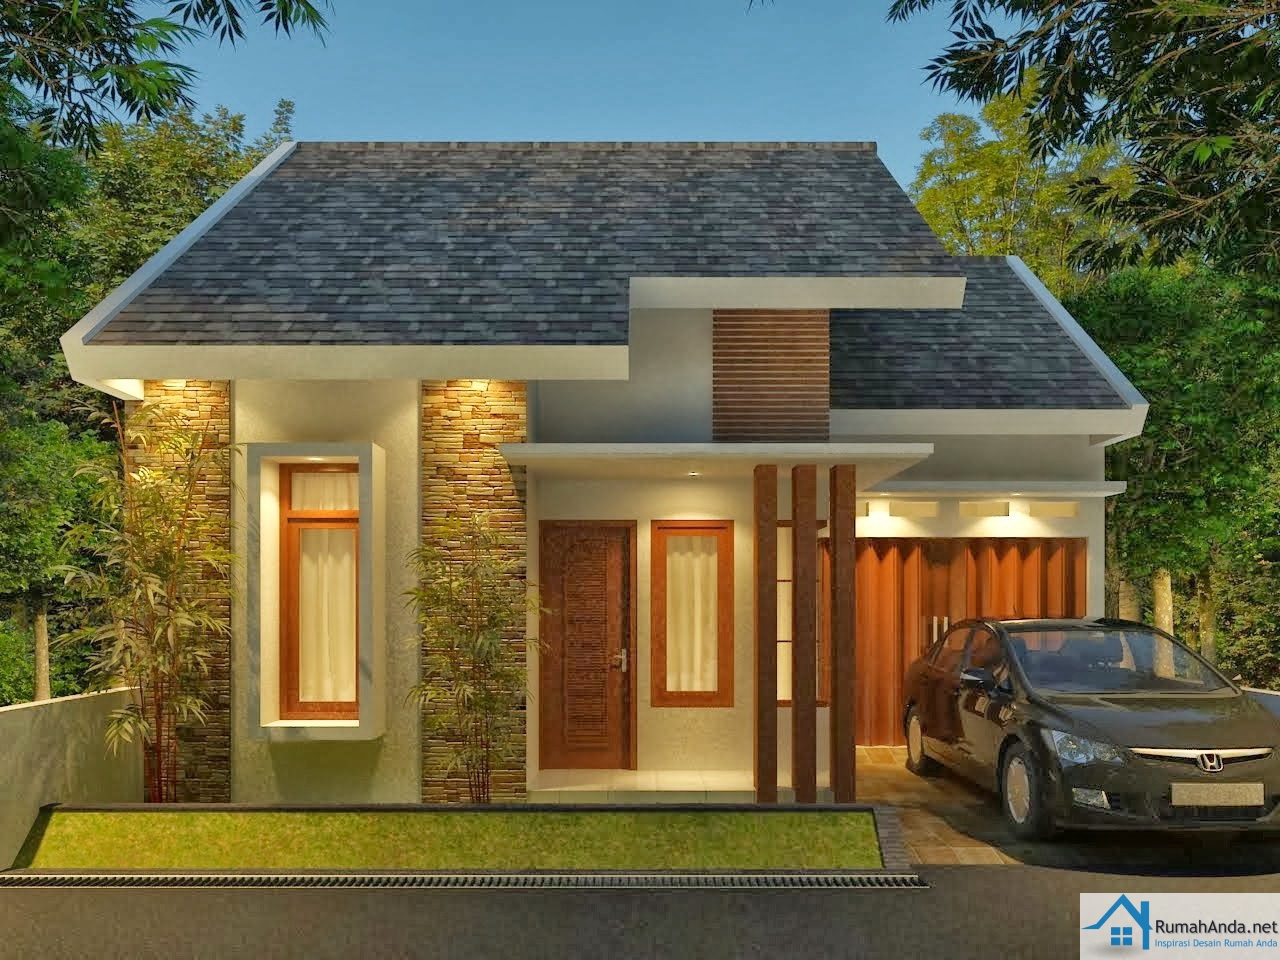 Contoh Desain Rumah American Minimalis : 33 Contoh Desain Warna Cat Rumah Minimalis Terbaru - YouTube : Beranda desain rumah contoh desain rumah kecil minimalis terbaik 2020.